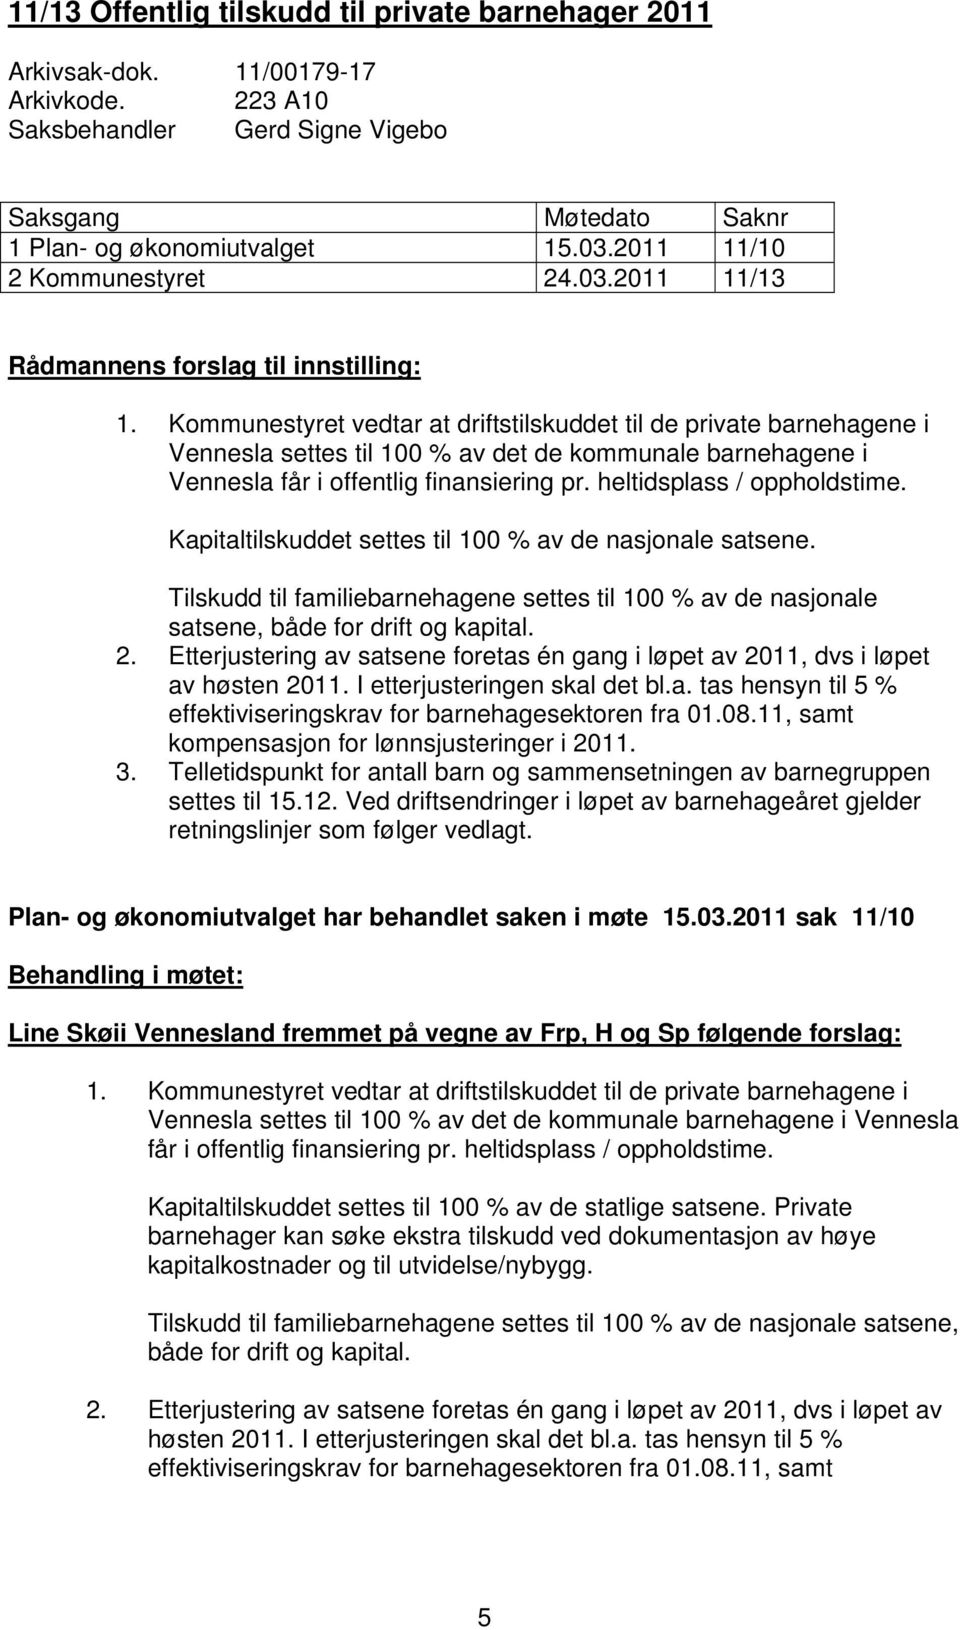 Kommunestyret vedtar at driftstilskuddet til de private barnehagene i Vennesla settes til 100 % av det de kommunale barnehagene i Vennesla får i offentlig finansiering pr. heltidsplass / oppholdstime.